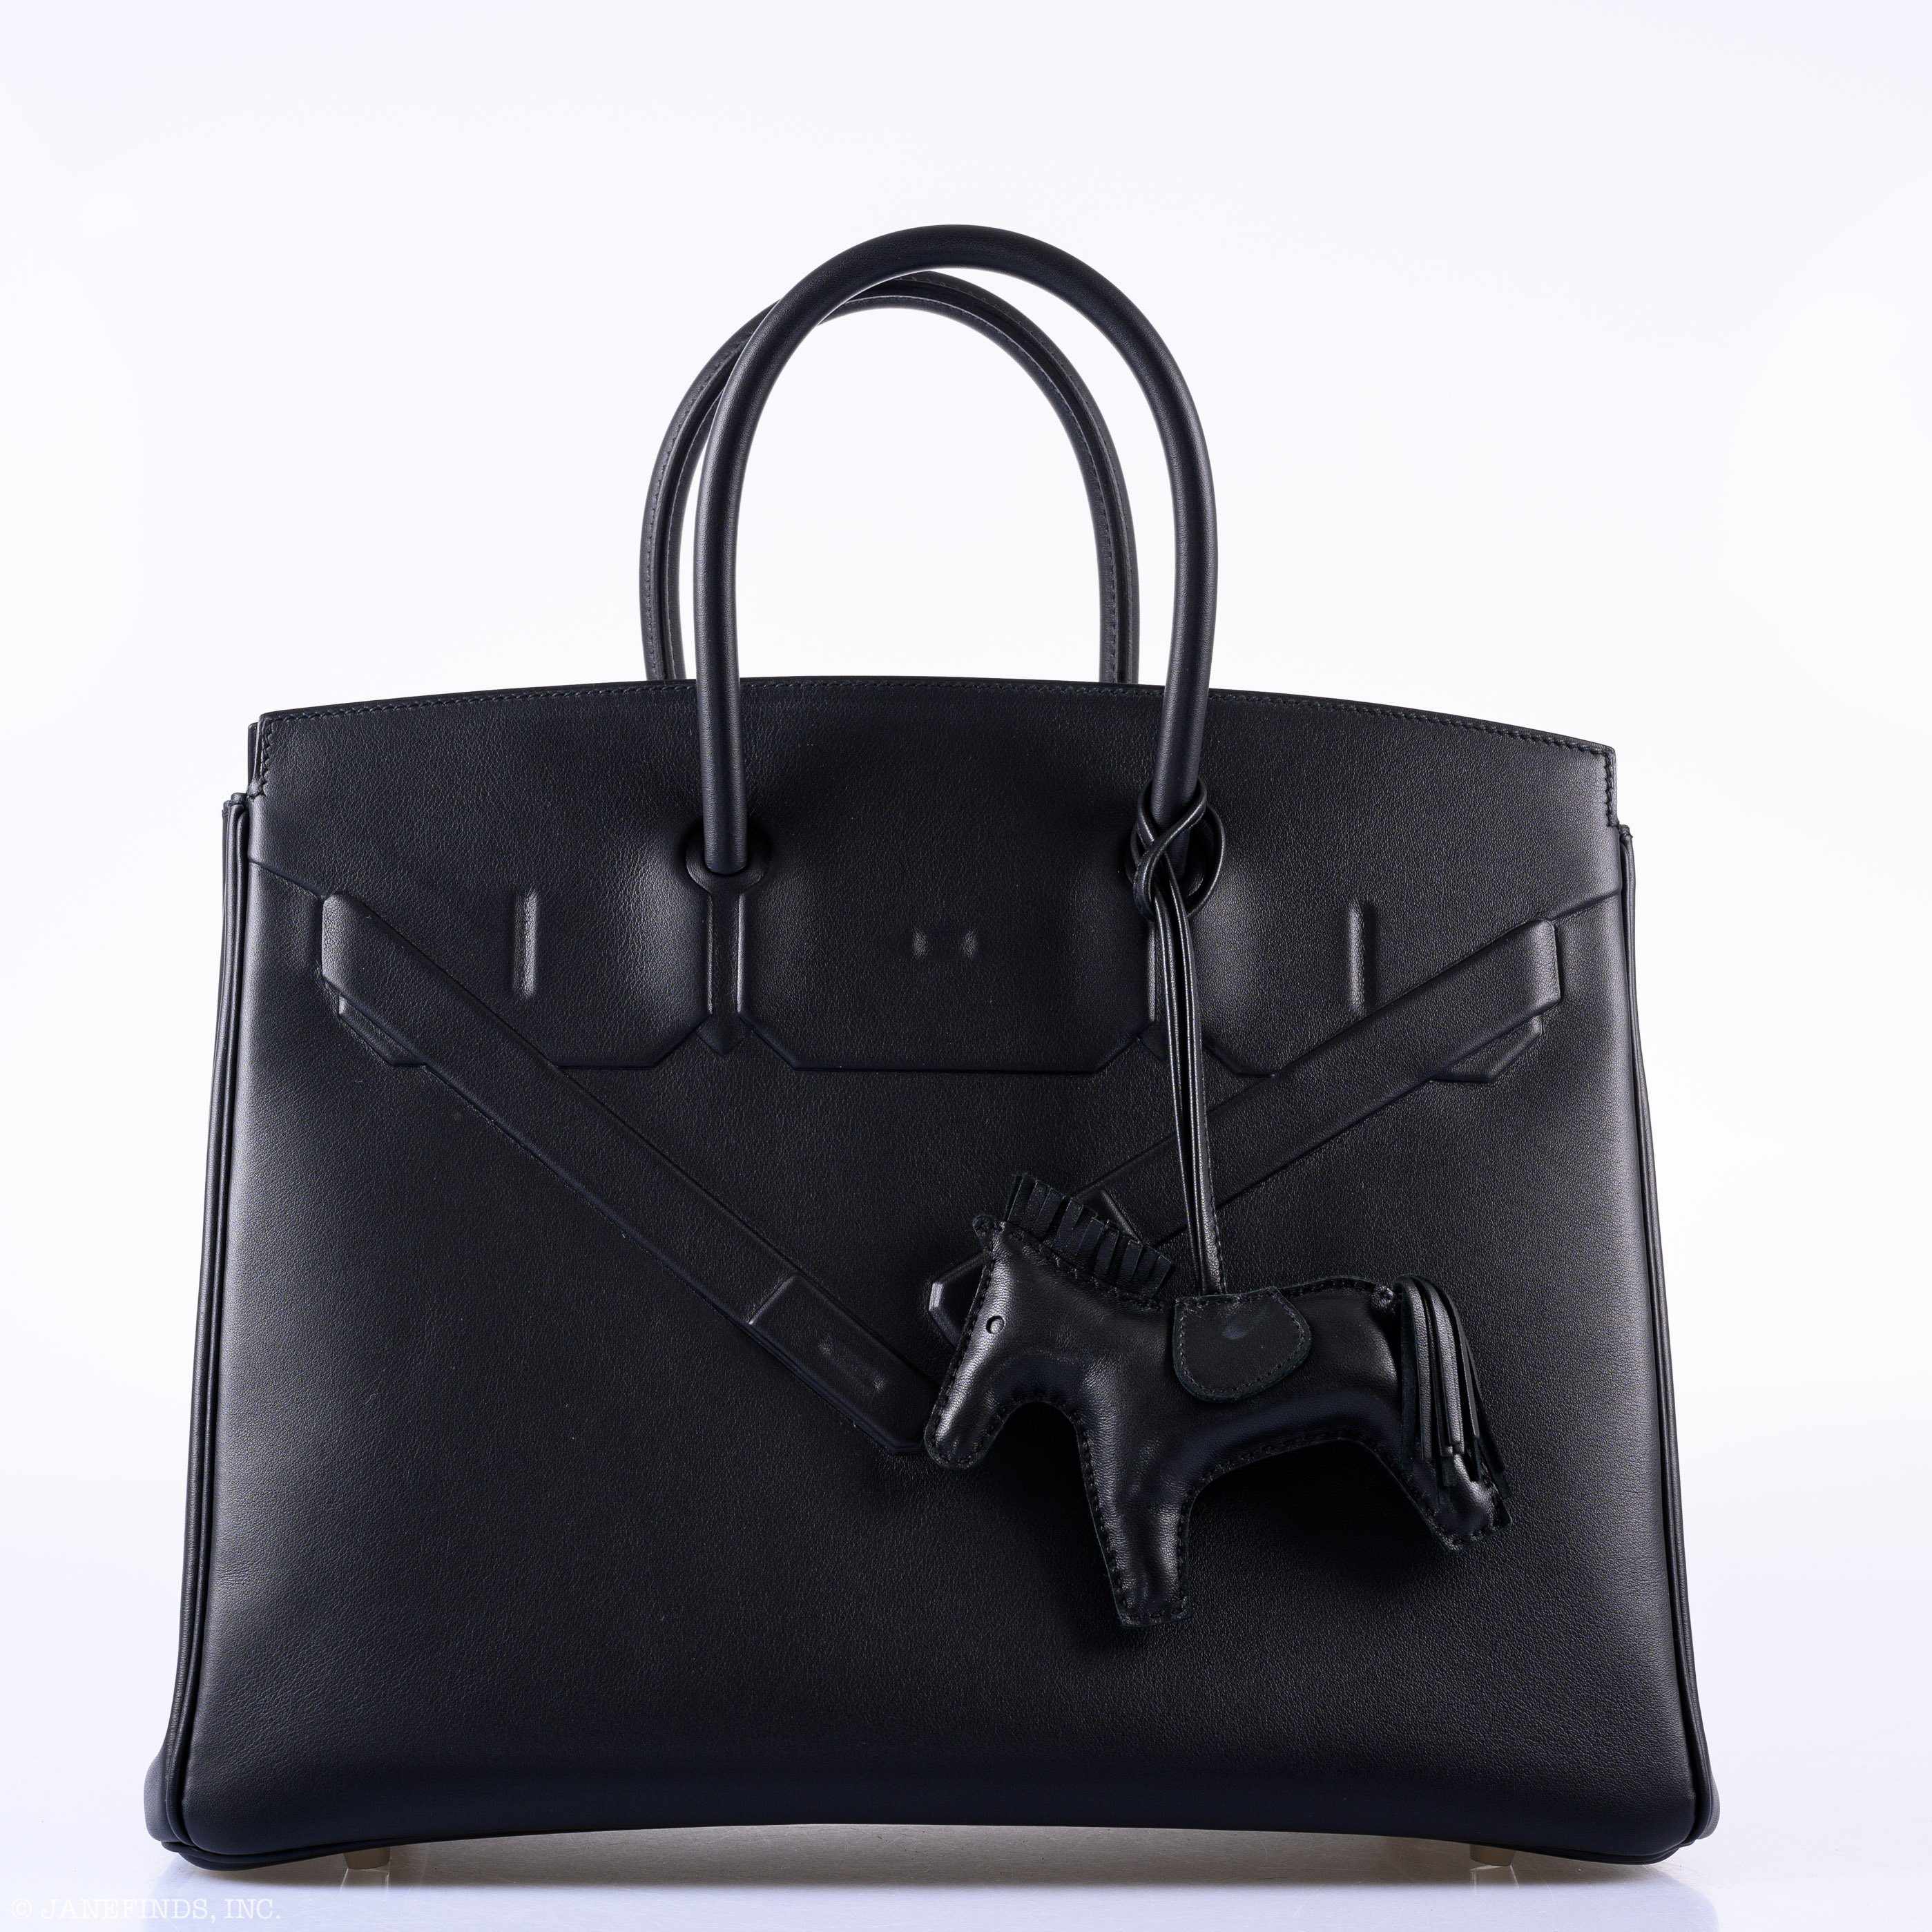 Hermès Shadow Birkin 35 Black Swift Palladium Hardware - 2020, Y